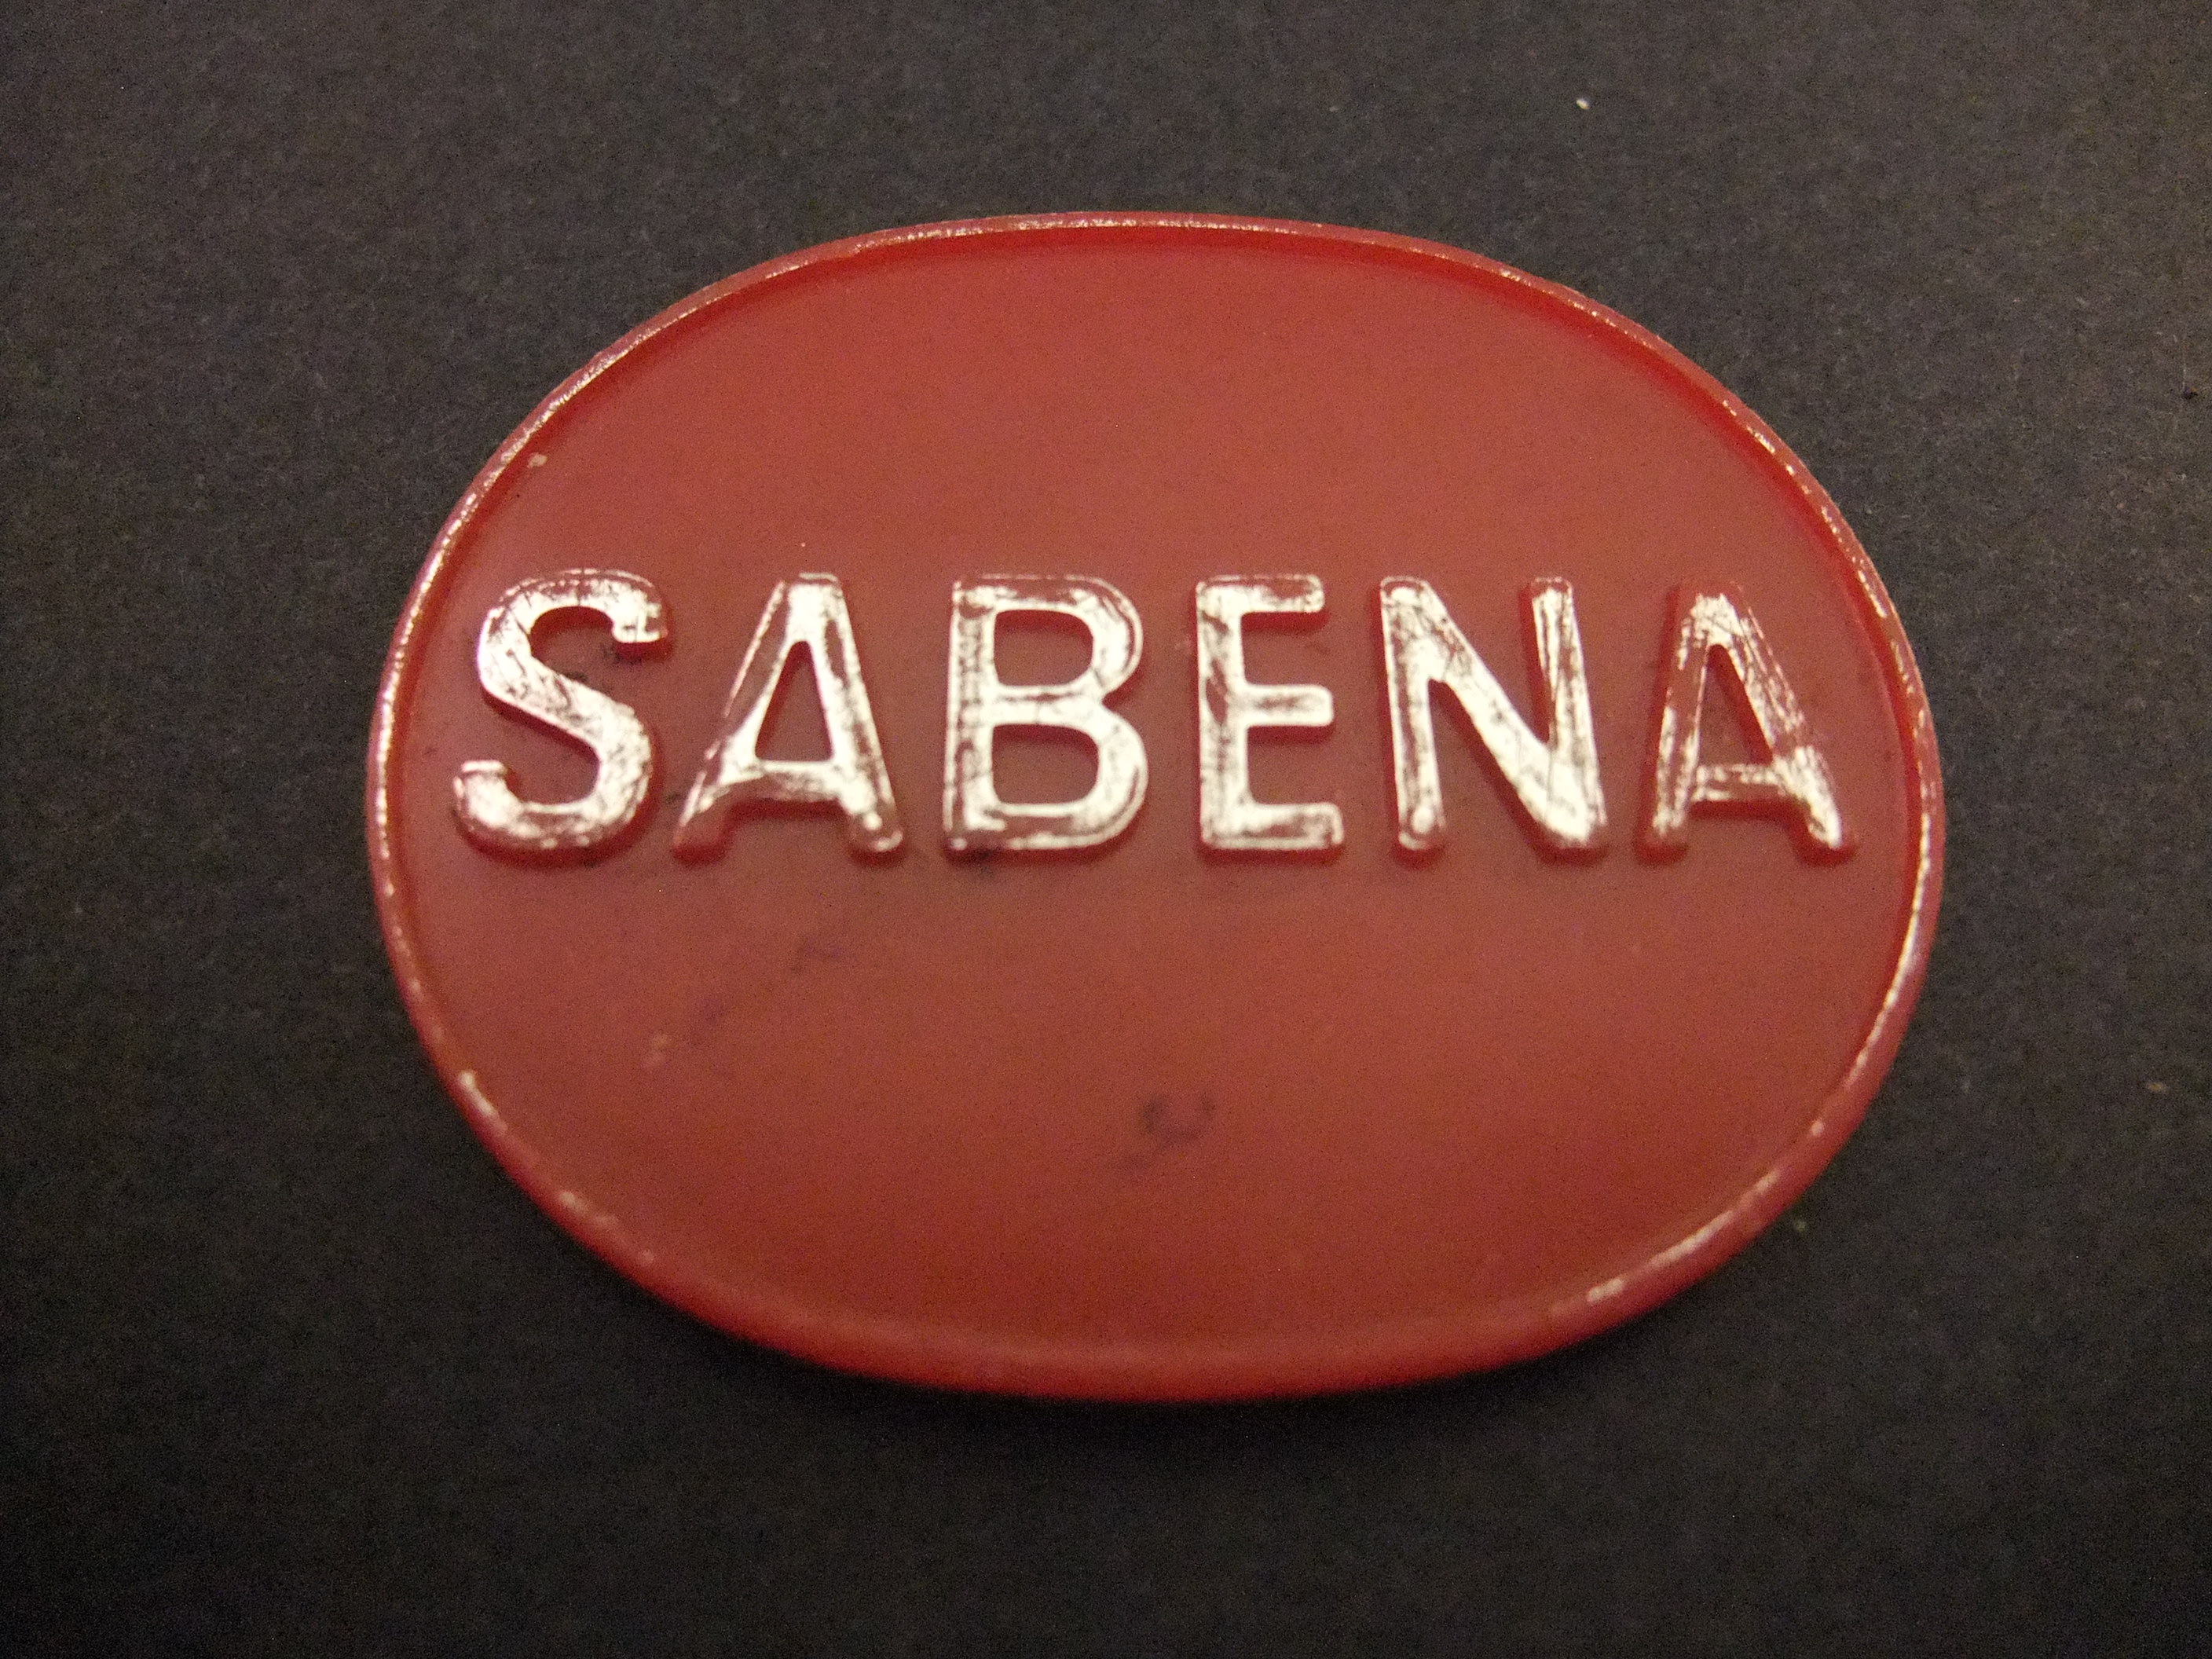 Sabena tot 2001 nationale luchtvaartmaatschappij van België